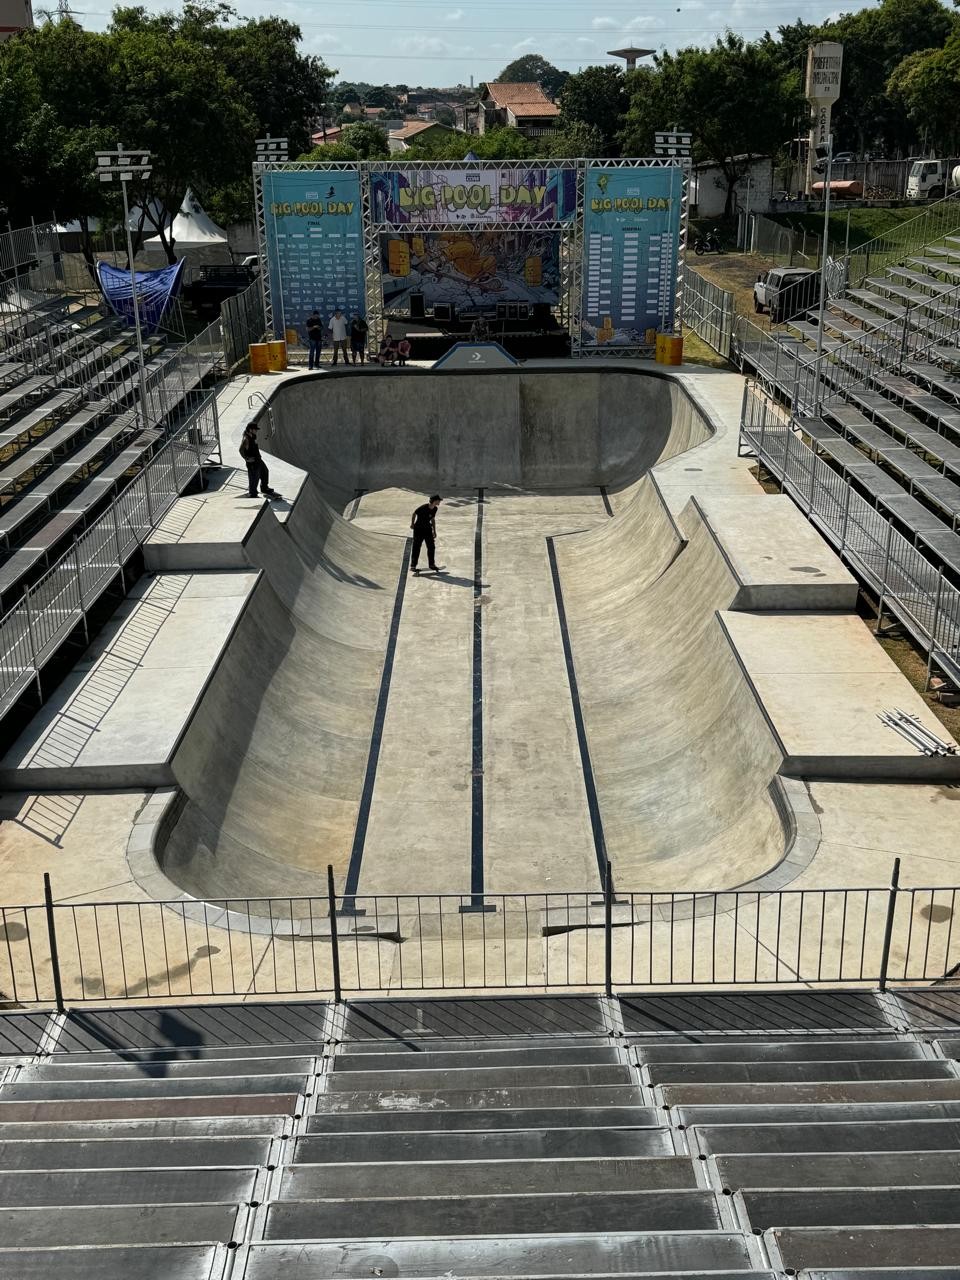 Caçapava recebe evento de skate e inaugura pista pública em formato de piscina; veja programação